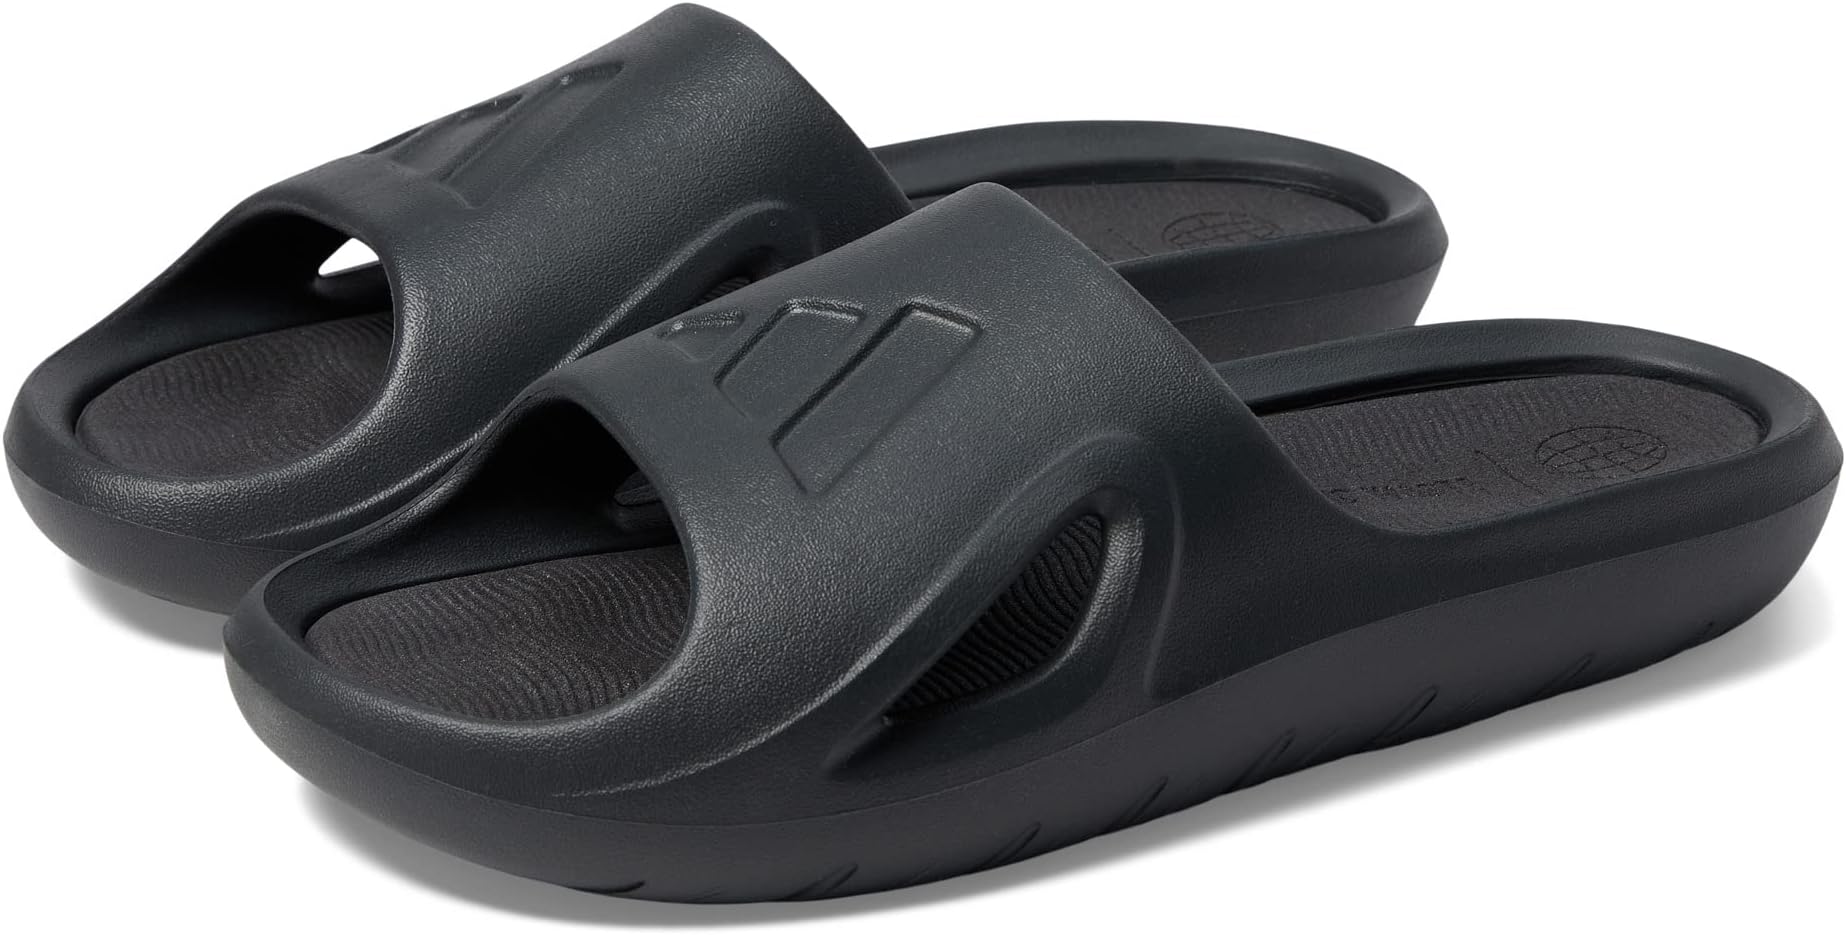 Шлепанцы Adicane Slides adidas, цвет Carbon/Carbon/Black цена и фото